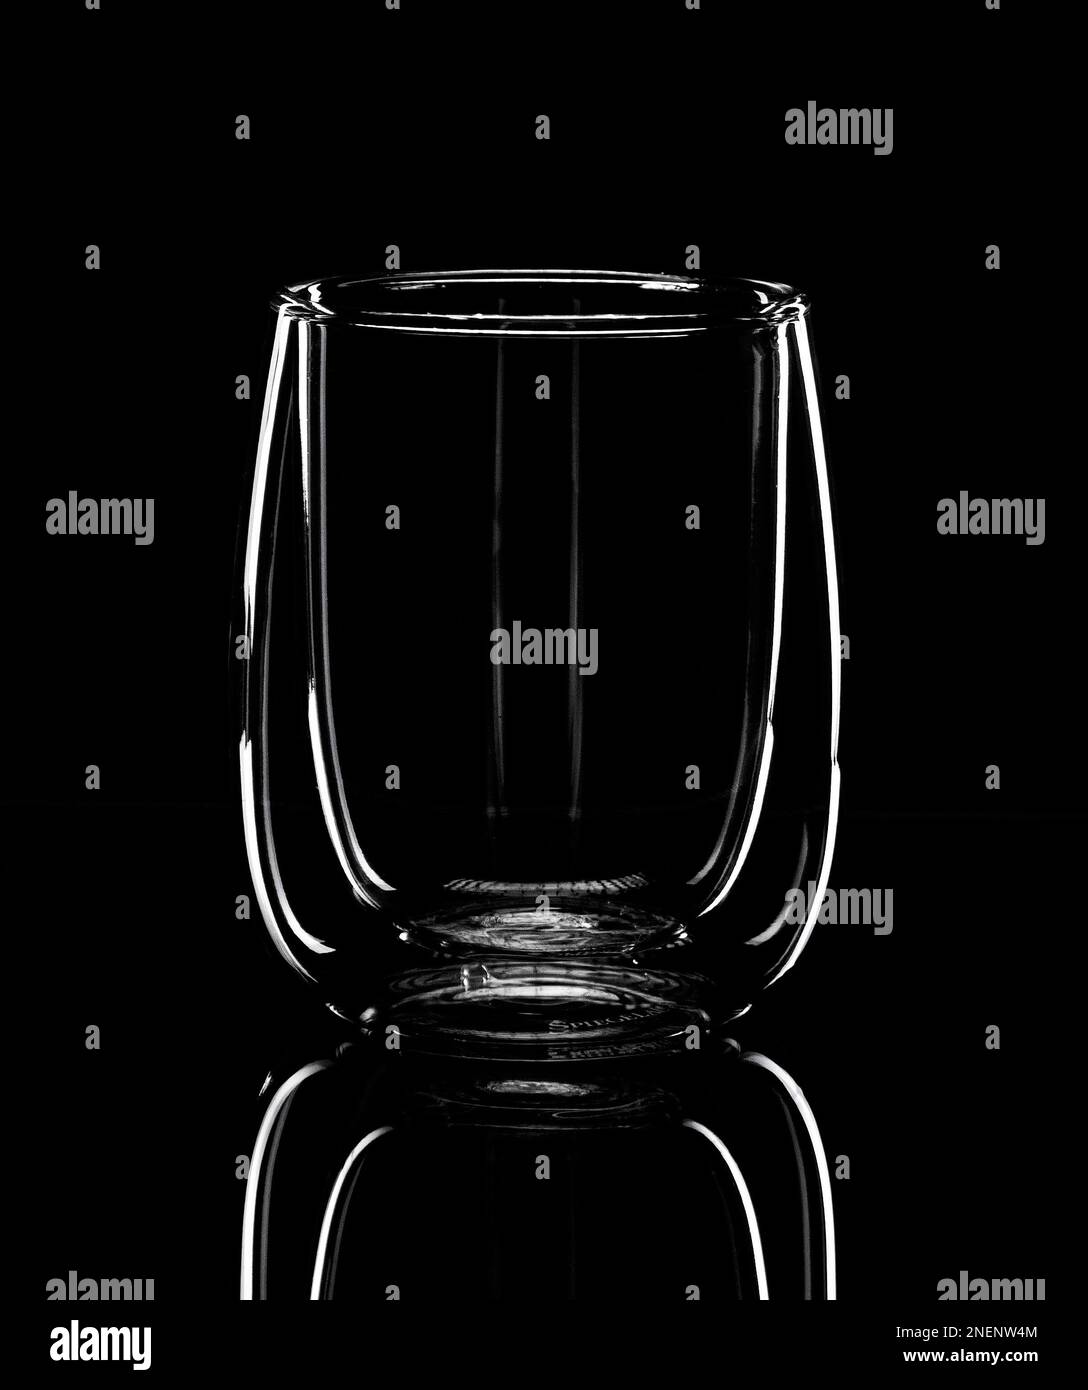 Minimalisme, la silhouette lumineuse d'un verre pour latte se reflète dans une table miroir noire. Photo monochrome Banque D'Images